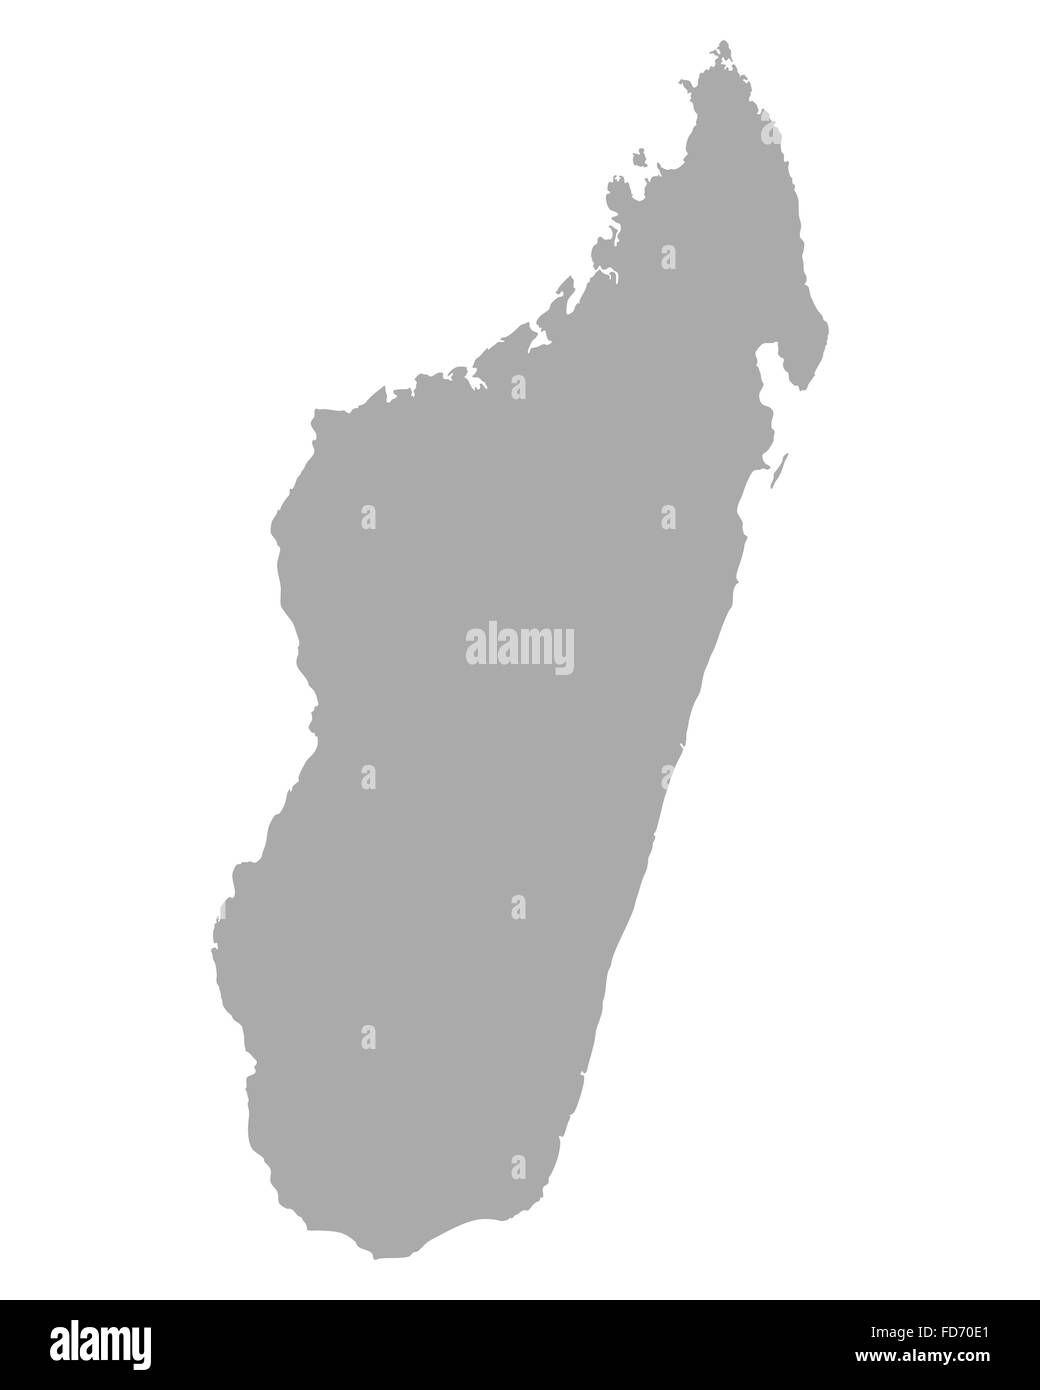 Map of Madagascar Stock Photo